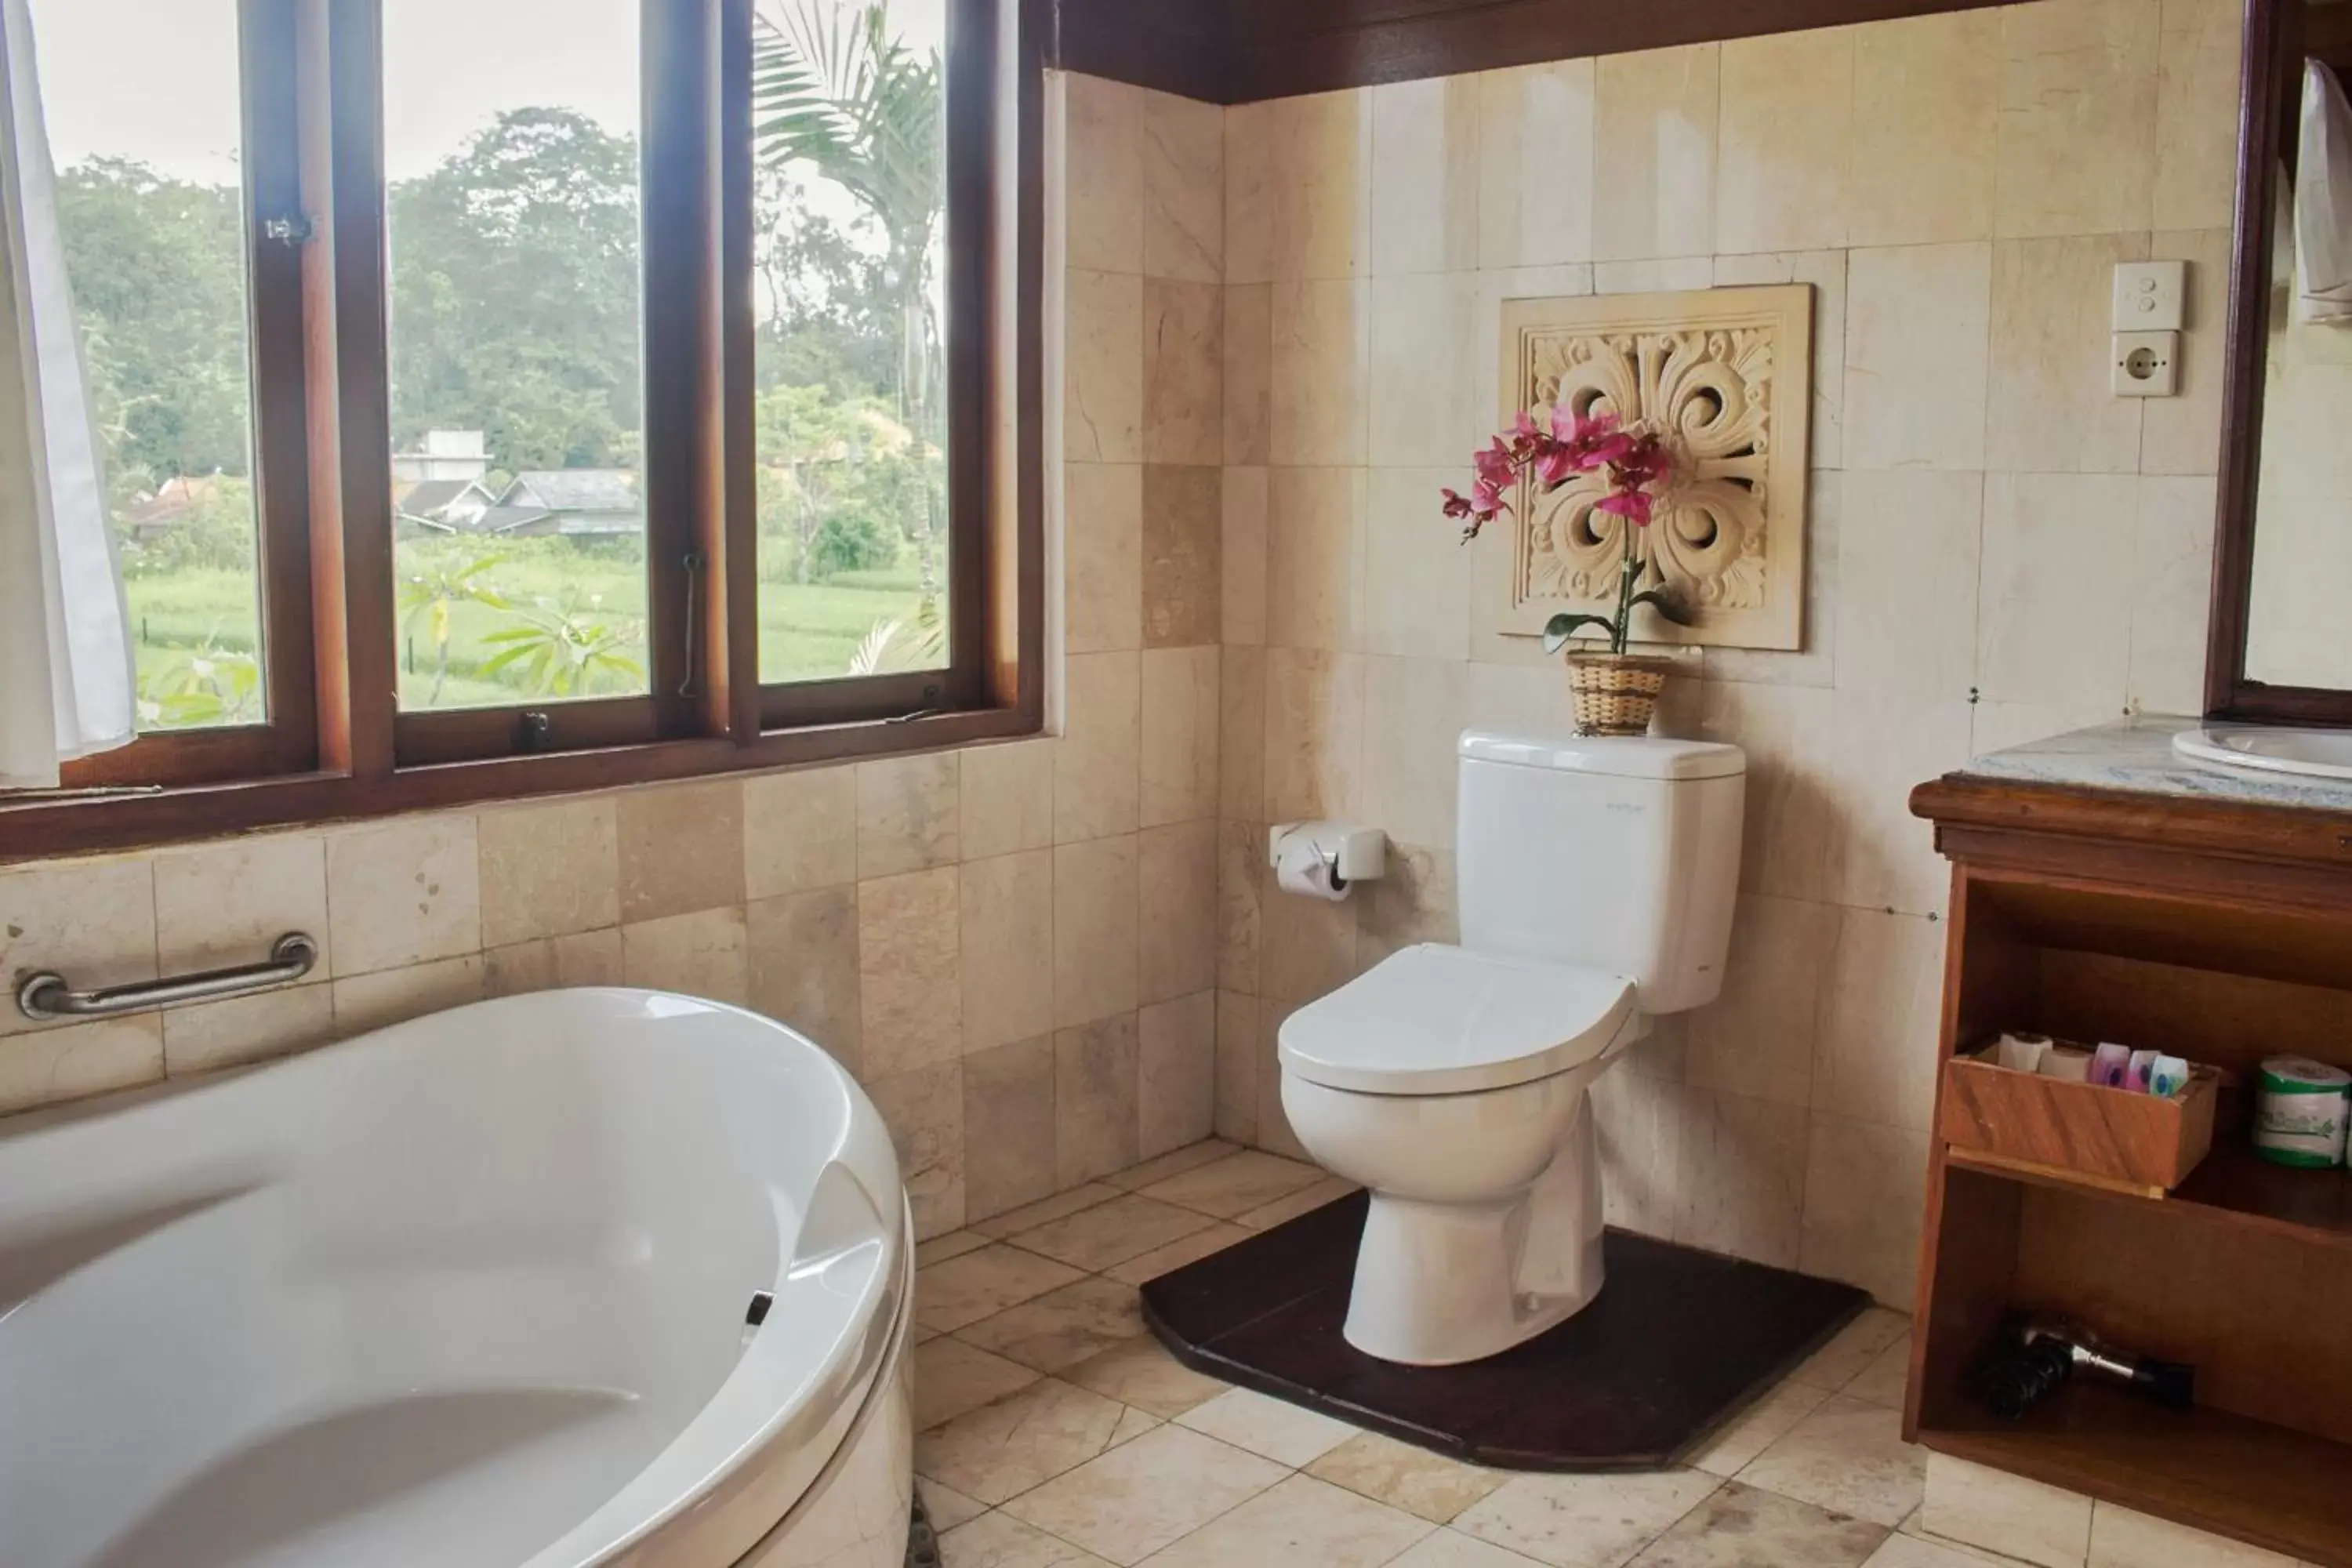 Toilet, Bathroom in Saren Indah Hotel - CHSE Certified